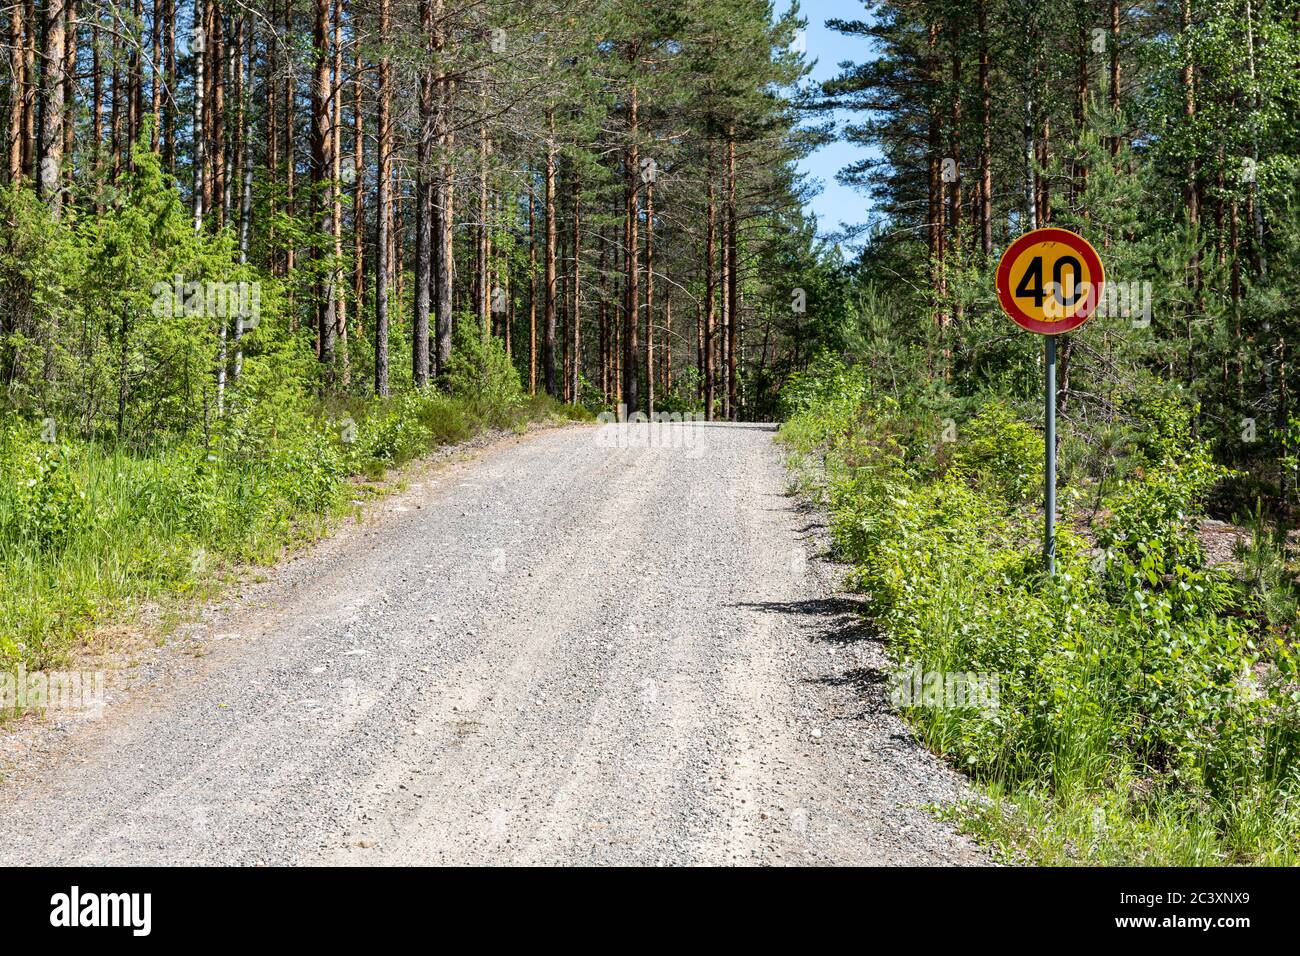 Route de campagne en gravier avec un panneau de limite de vitesse de 40 km/h dans les zones rurales de la Finlande Banque D'Images